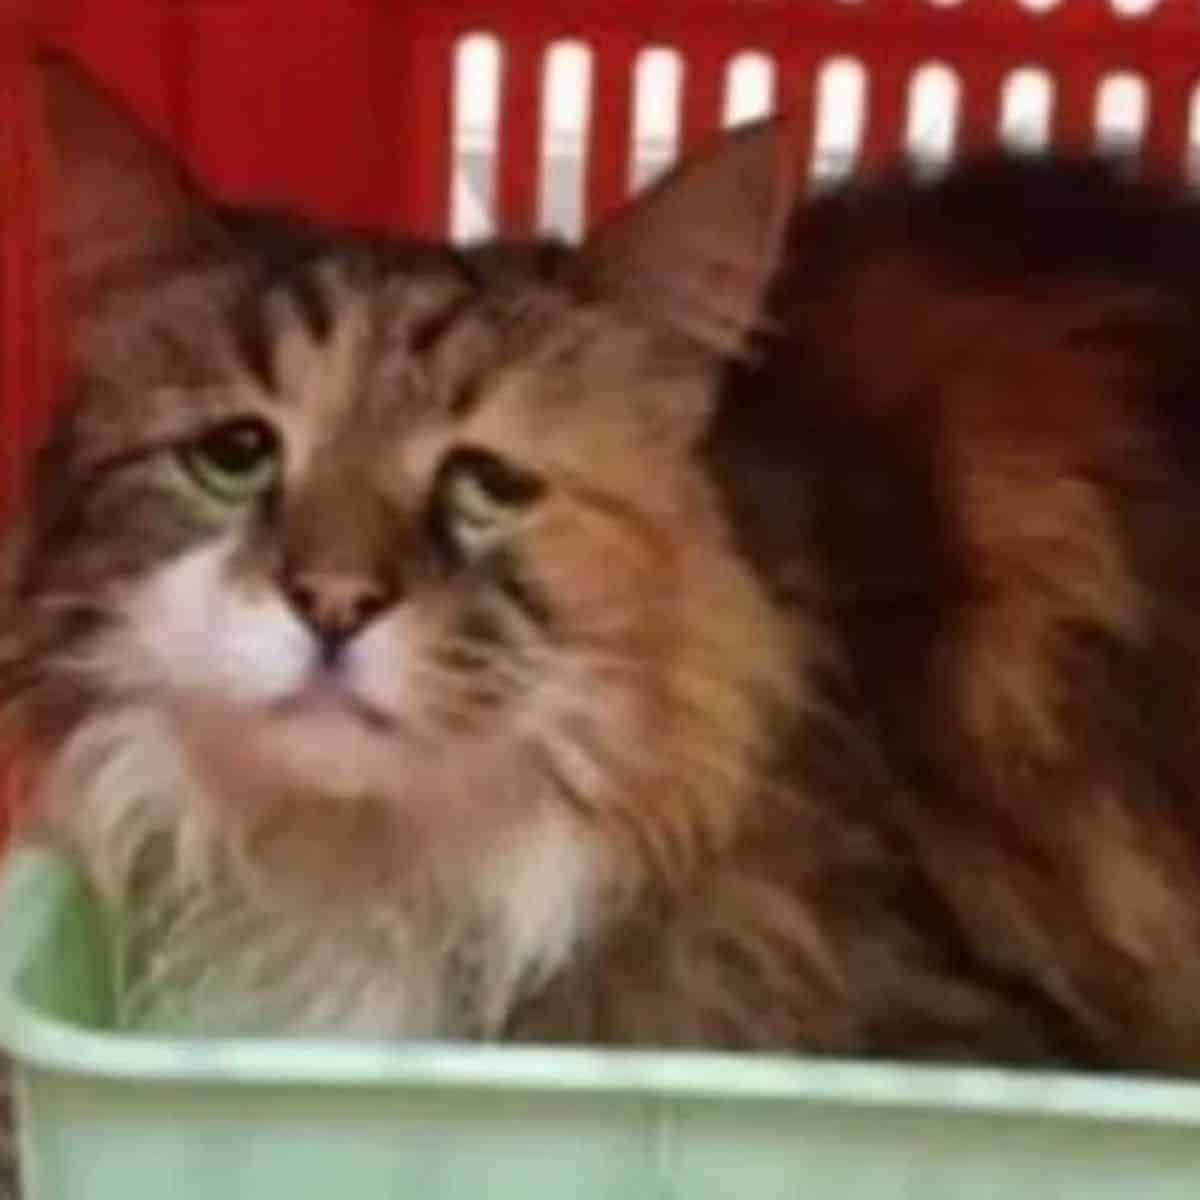 sad cat in box